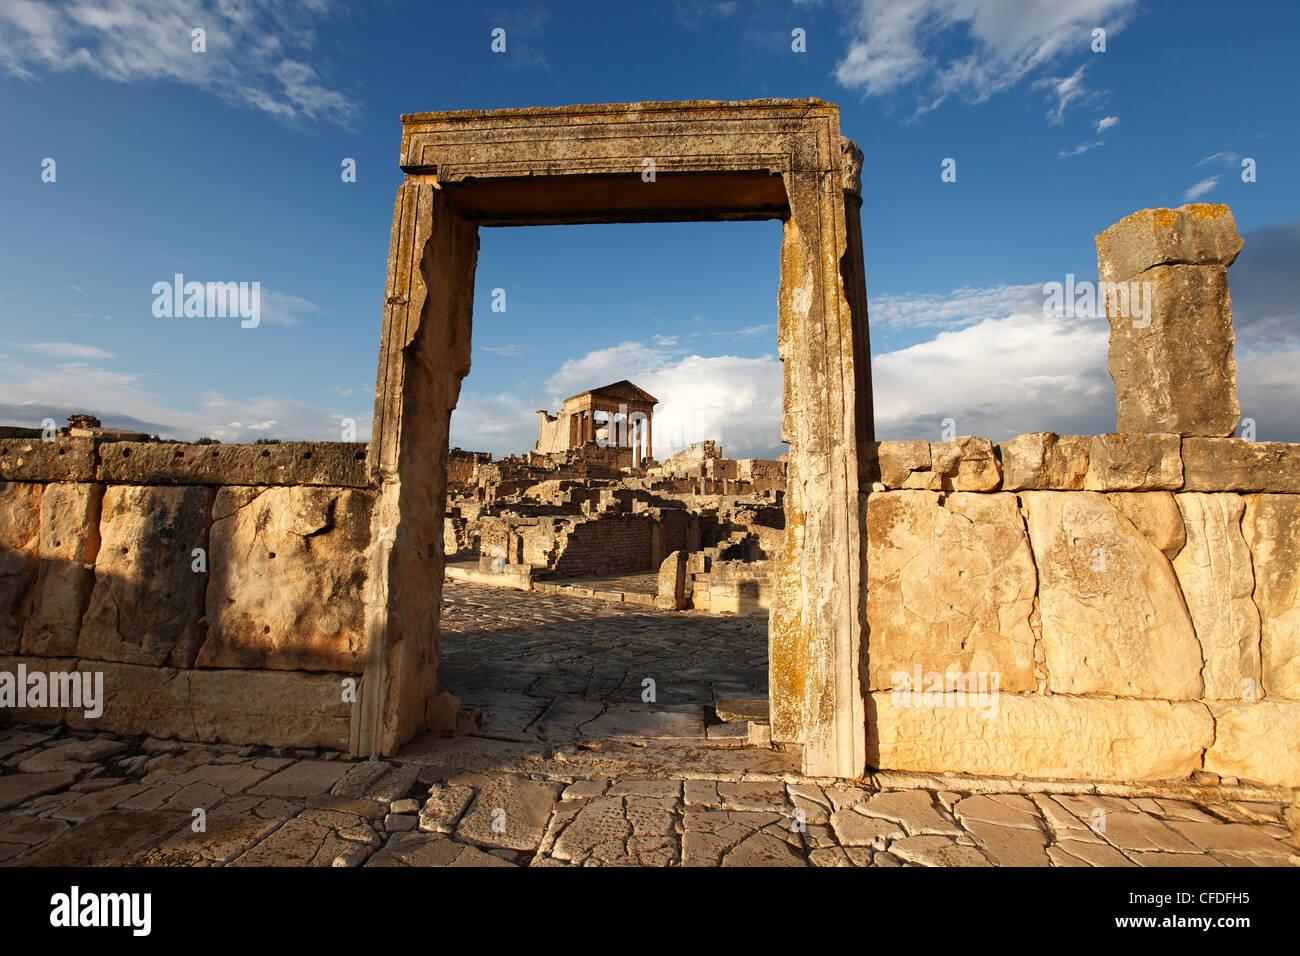 Vue vers le Capitole dans les ruines romaines de Dougga, site archéologique, site du patrimoine mondial de l'UNESCO, la Tunisie, l'Afrique du Nord Banque D'Images